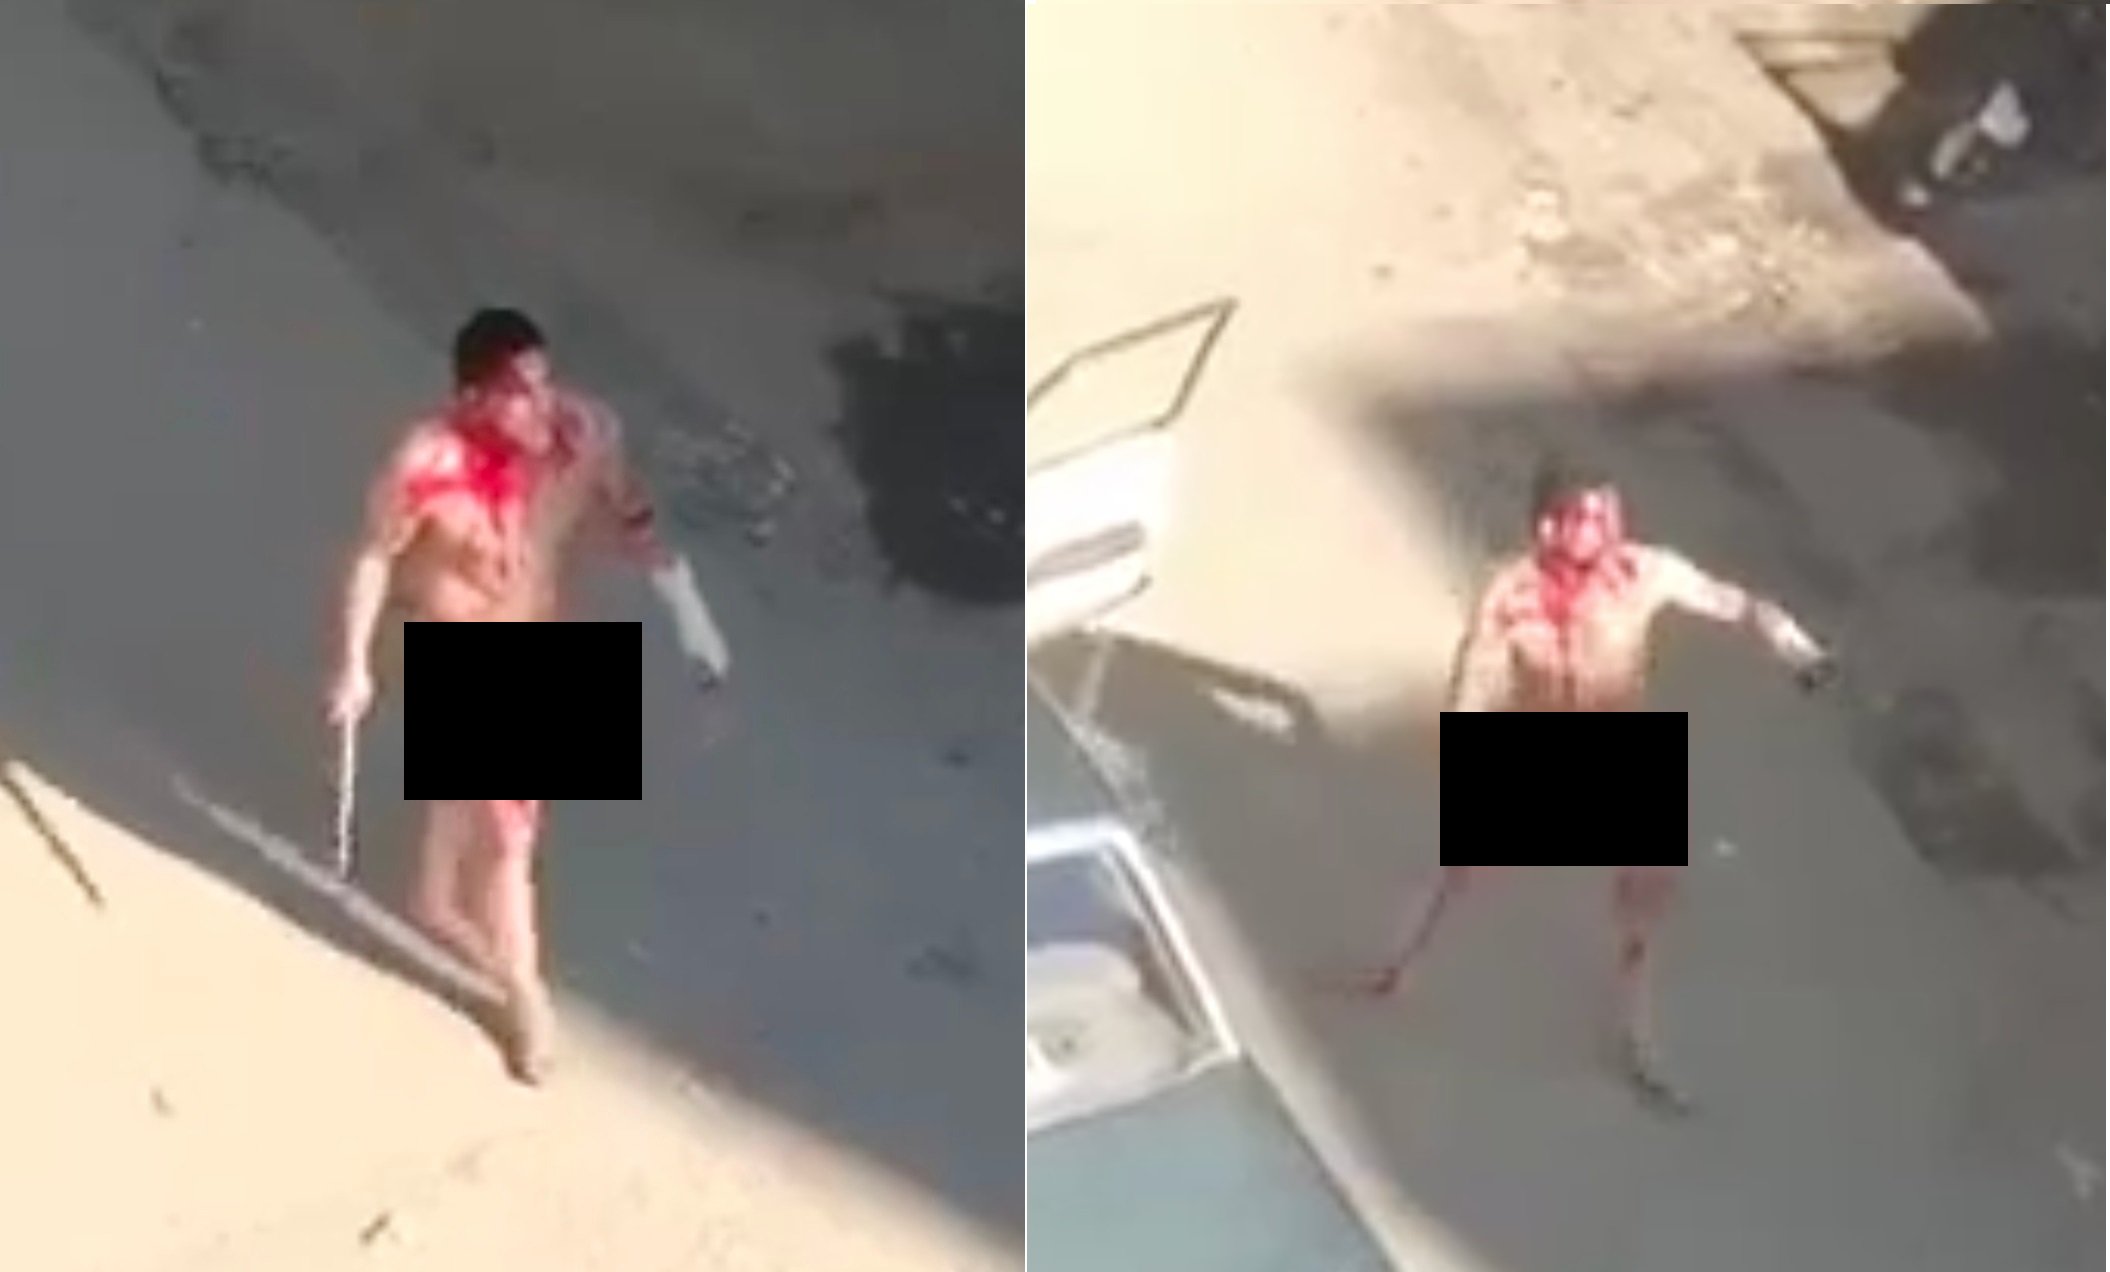 شاهد: شاب مصري يسير عارياً وسط المارة ويمزق جسده بسكين ويردد: "لا إله إلاّ الله هتروح من ربنا فين يا مصطفى"